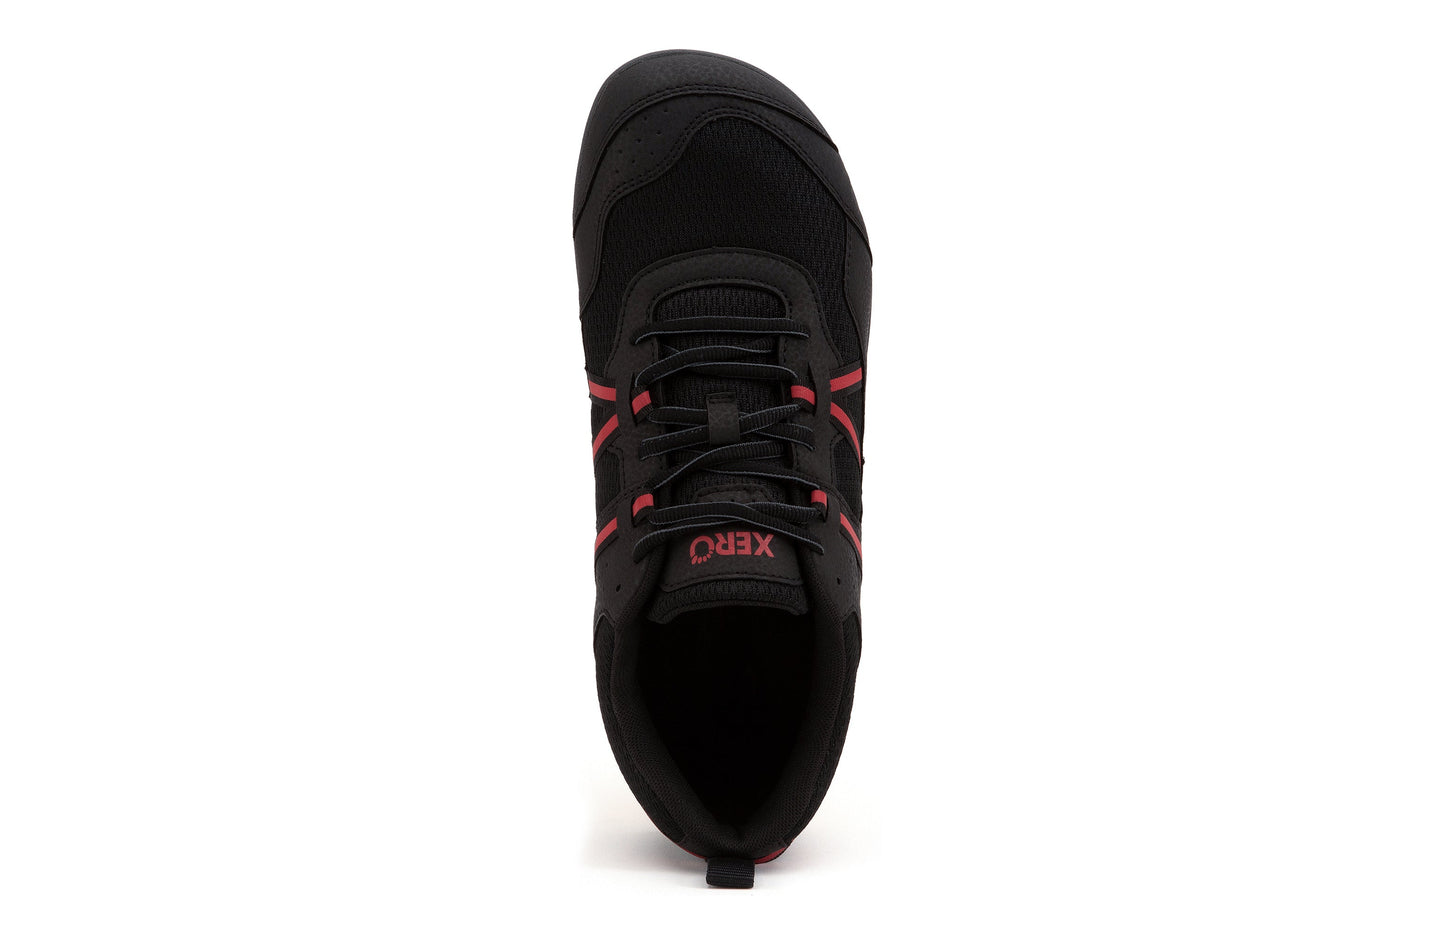 Xero Shoes Prio barfods løbesko/træningssko til mænd i farven black / samba red, top